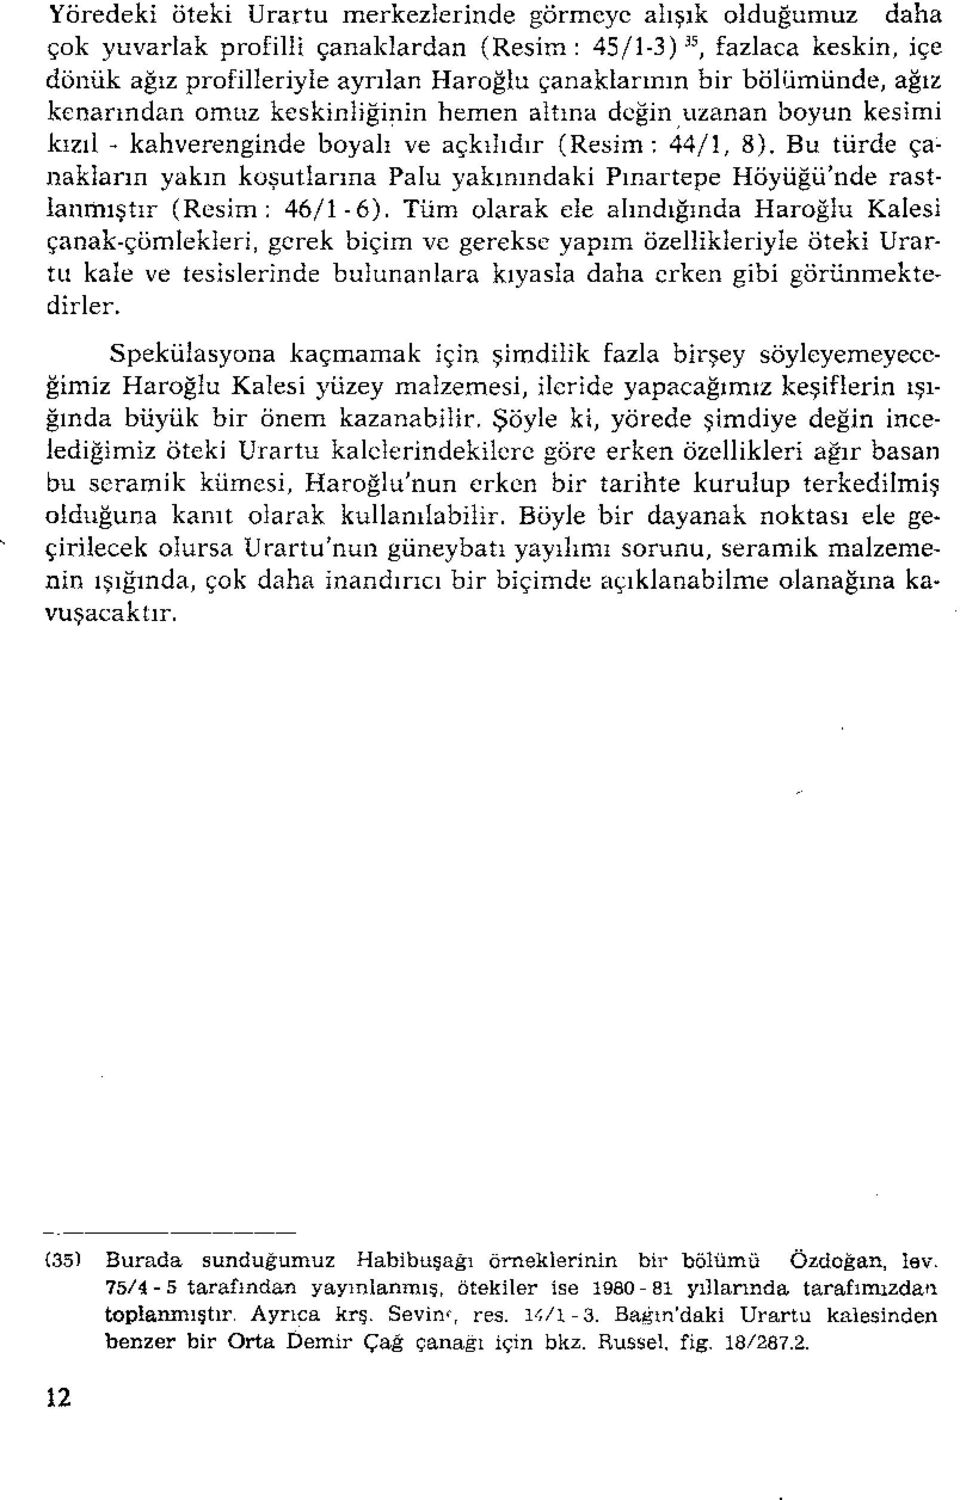 Bu türde çanakların yakın koşutlanna Palu yakınındaki Pınartepe Höyüğü'nde rastlanmıştır (Resim: 46/1-6), Tüm olarak ele alındığında Haroğlu Kalesi çanak-çömlekleri.